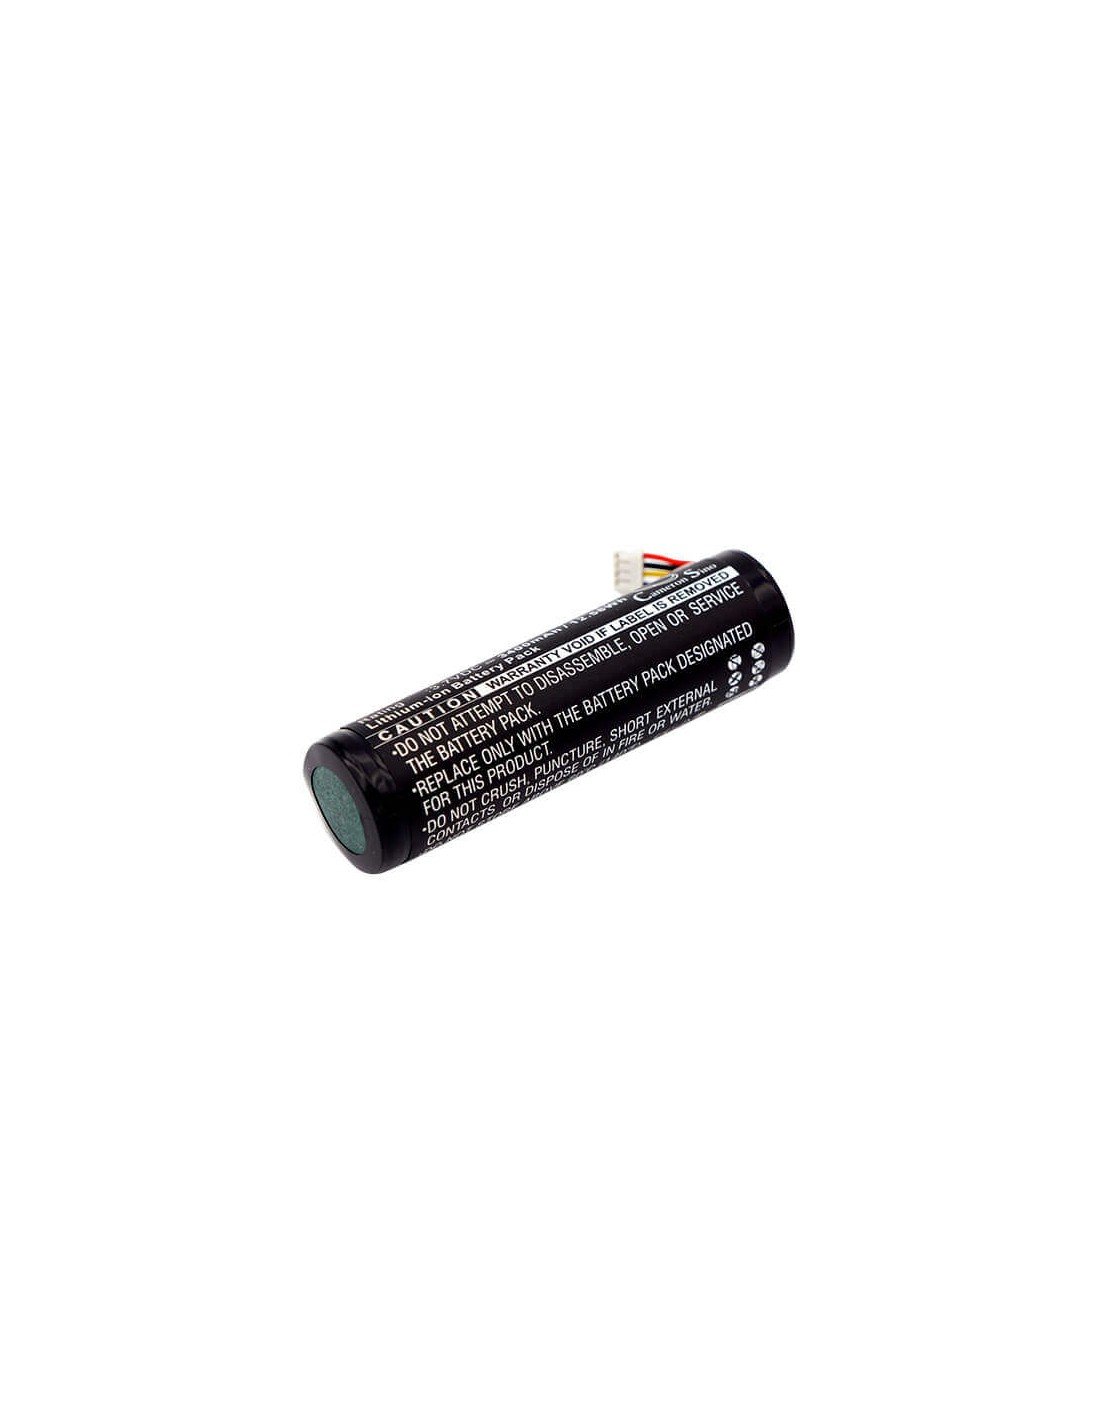 Battery for Garmin, Alpha, Alpha 100, Alpha Gps Pig Hunting Dog Tracking System 3.7V, 3400mAh - 12.58Wh